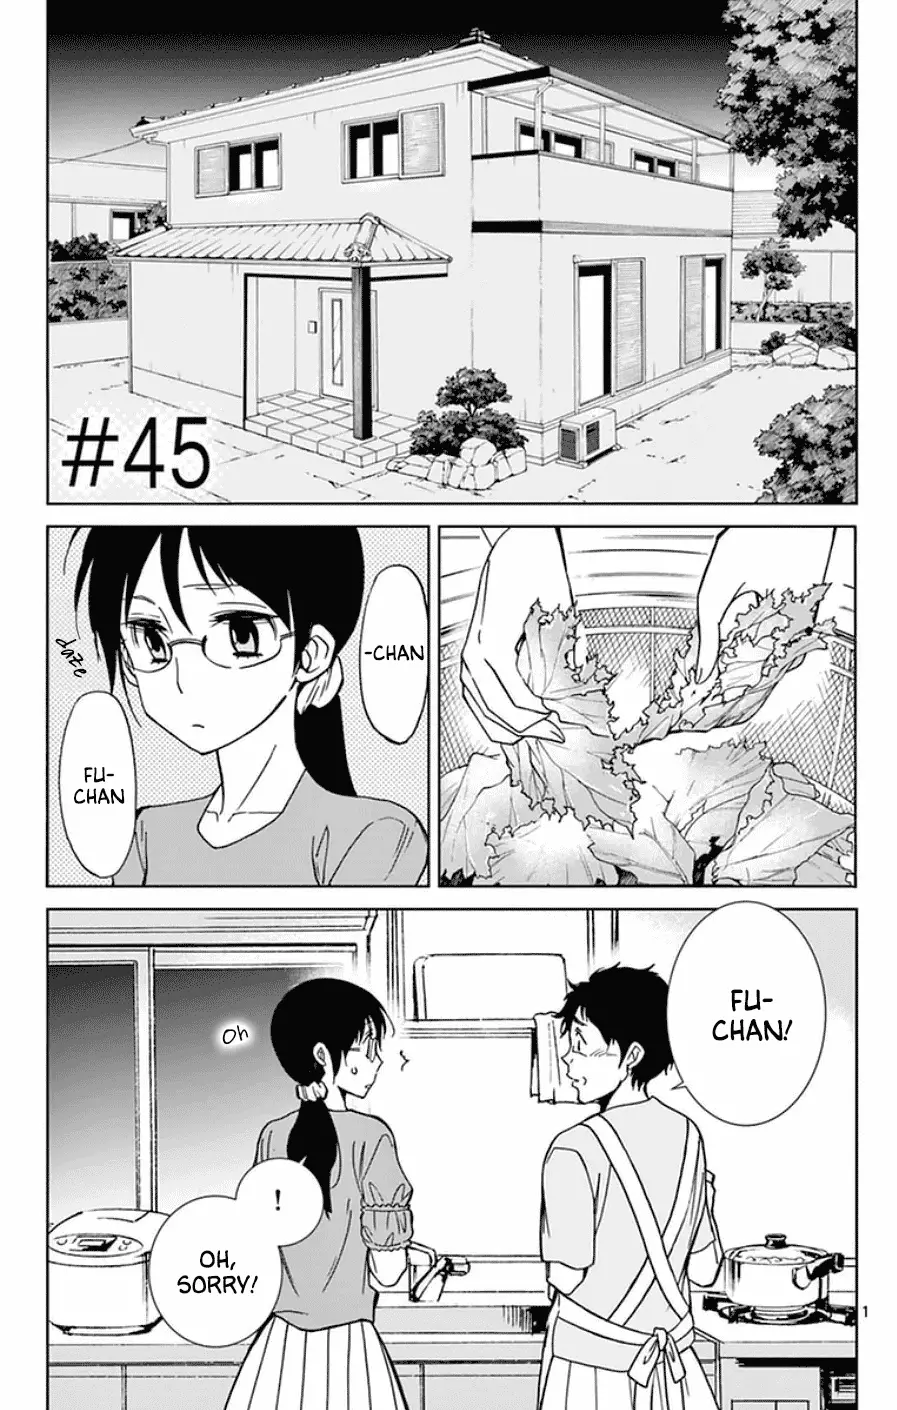 Dousei Sensei Wa Renai Ga Wakaranai. - 45 page 1-9f806faa